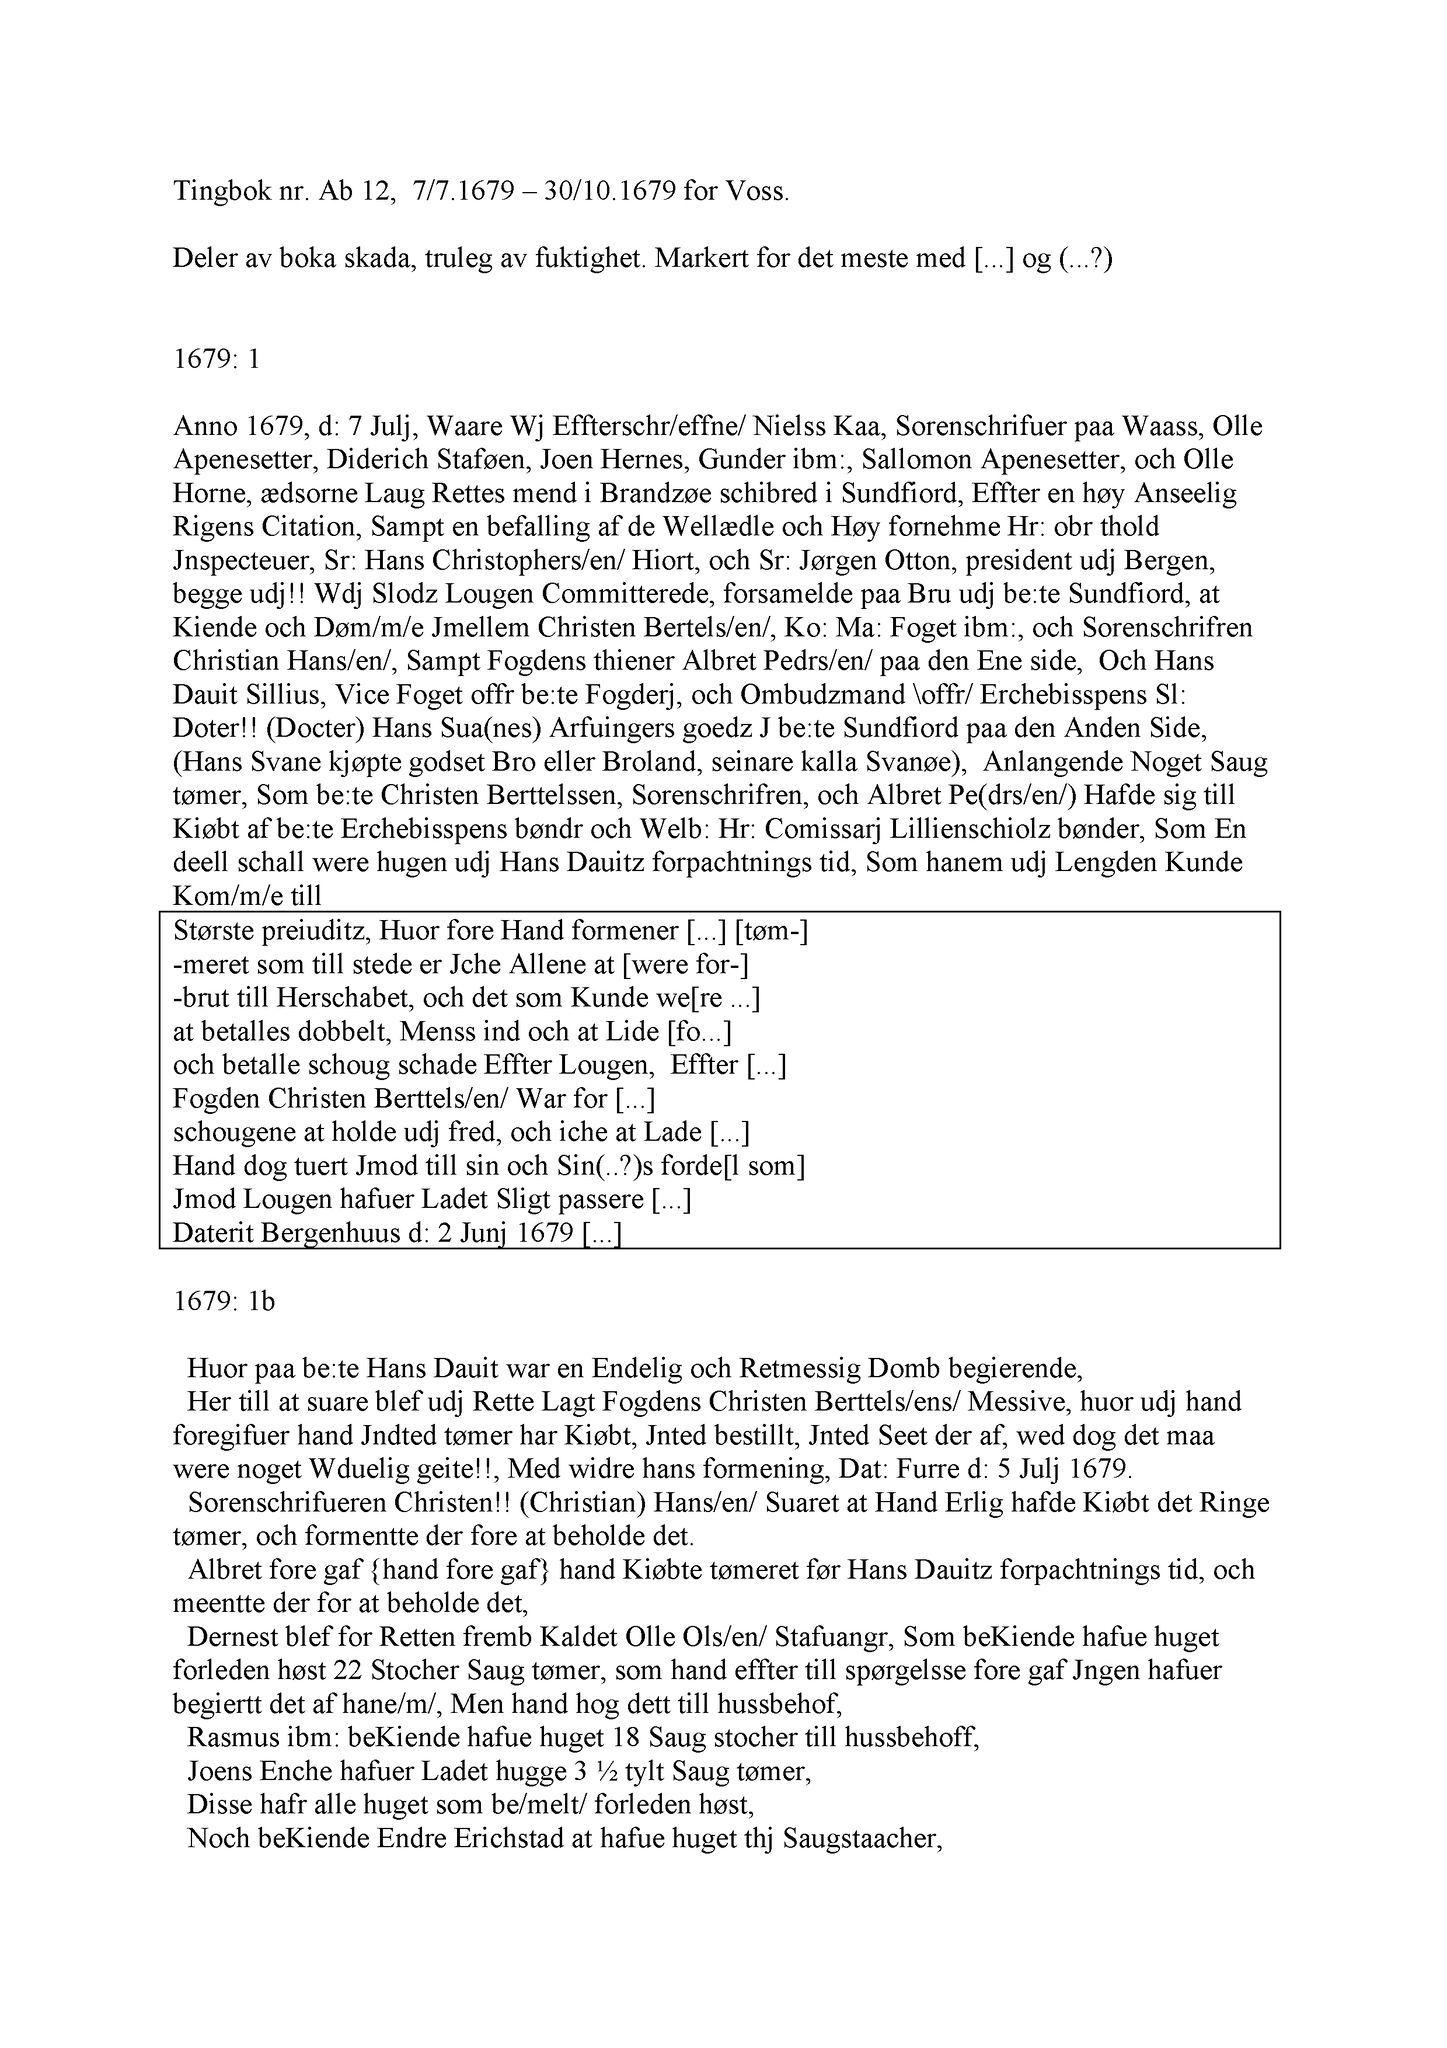 Samling av fulltekstavskrifter, SAB/FULLTEKST/A/12/0056: Hardanger og Voss sorenskriveri, tingbok nr. Ab 12 for Voss, 1679